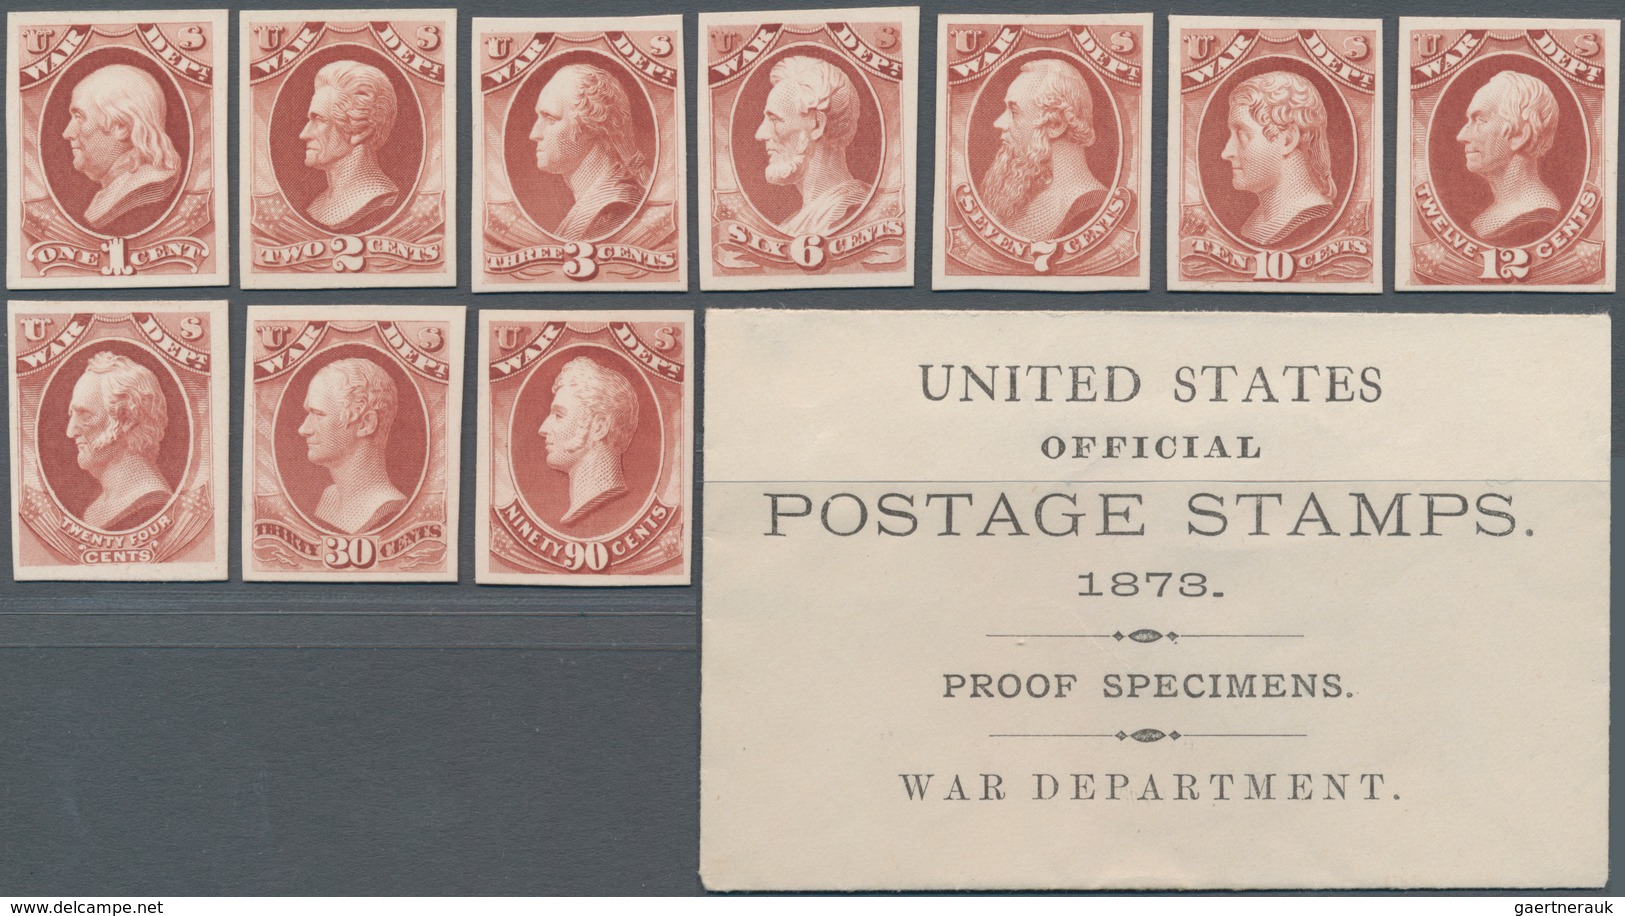 Vereinigte Staaten von Amerika - Dienstmarken: Officials Plate Proofs on Card (Scott O1P4-O93P4), Co